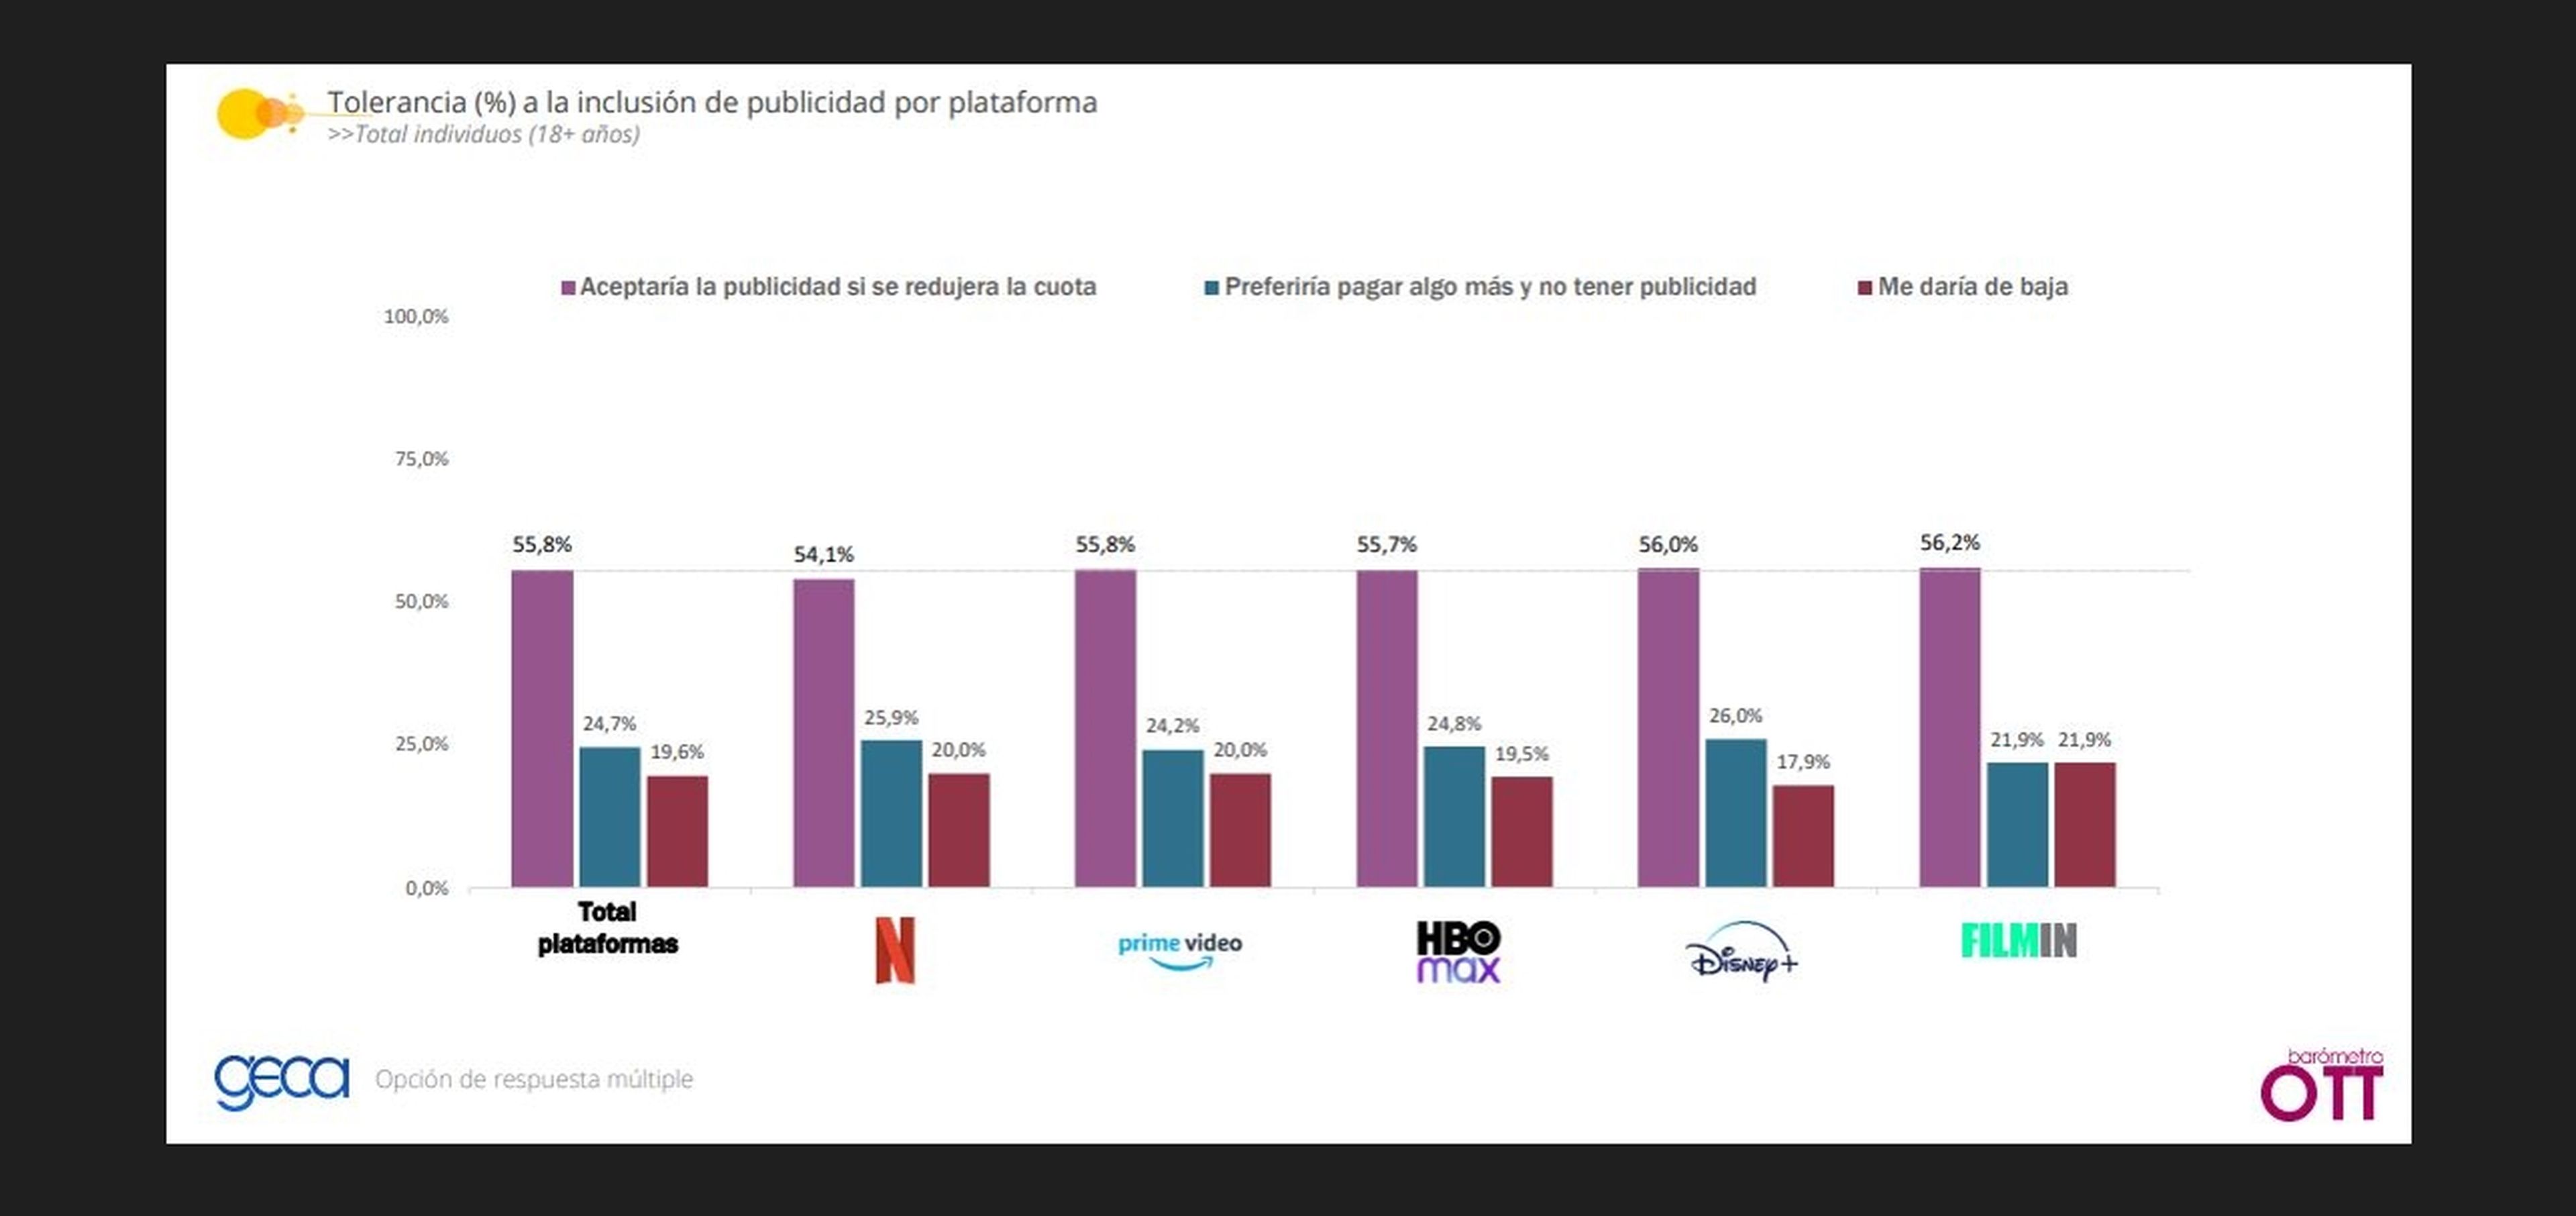 Tolerancia a la inclusión de publicidad en cada plataforma. Fuente: Barómetro OTT de GECA